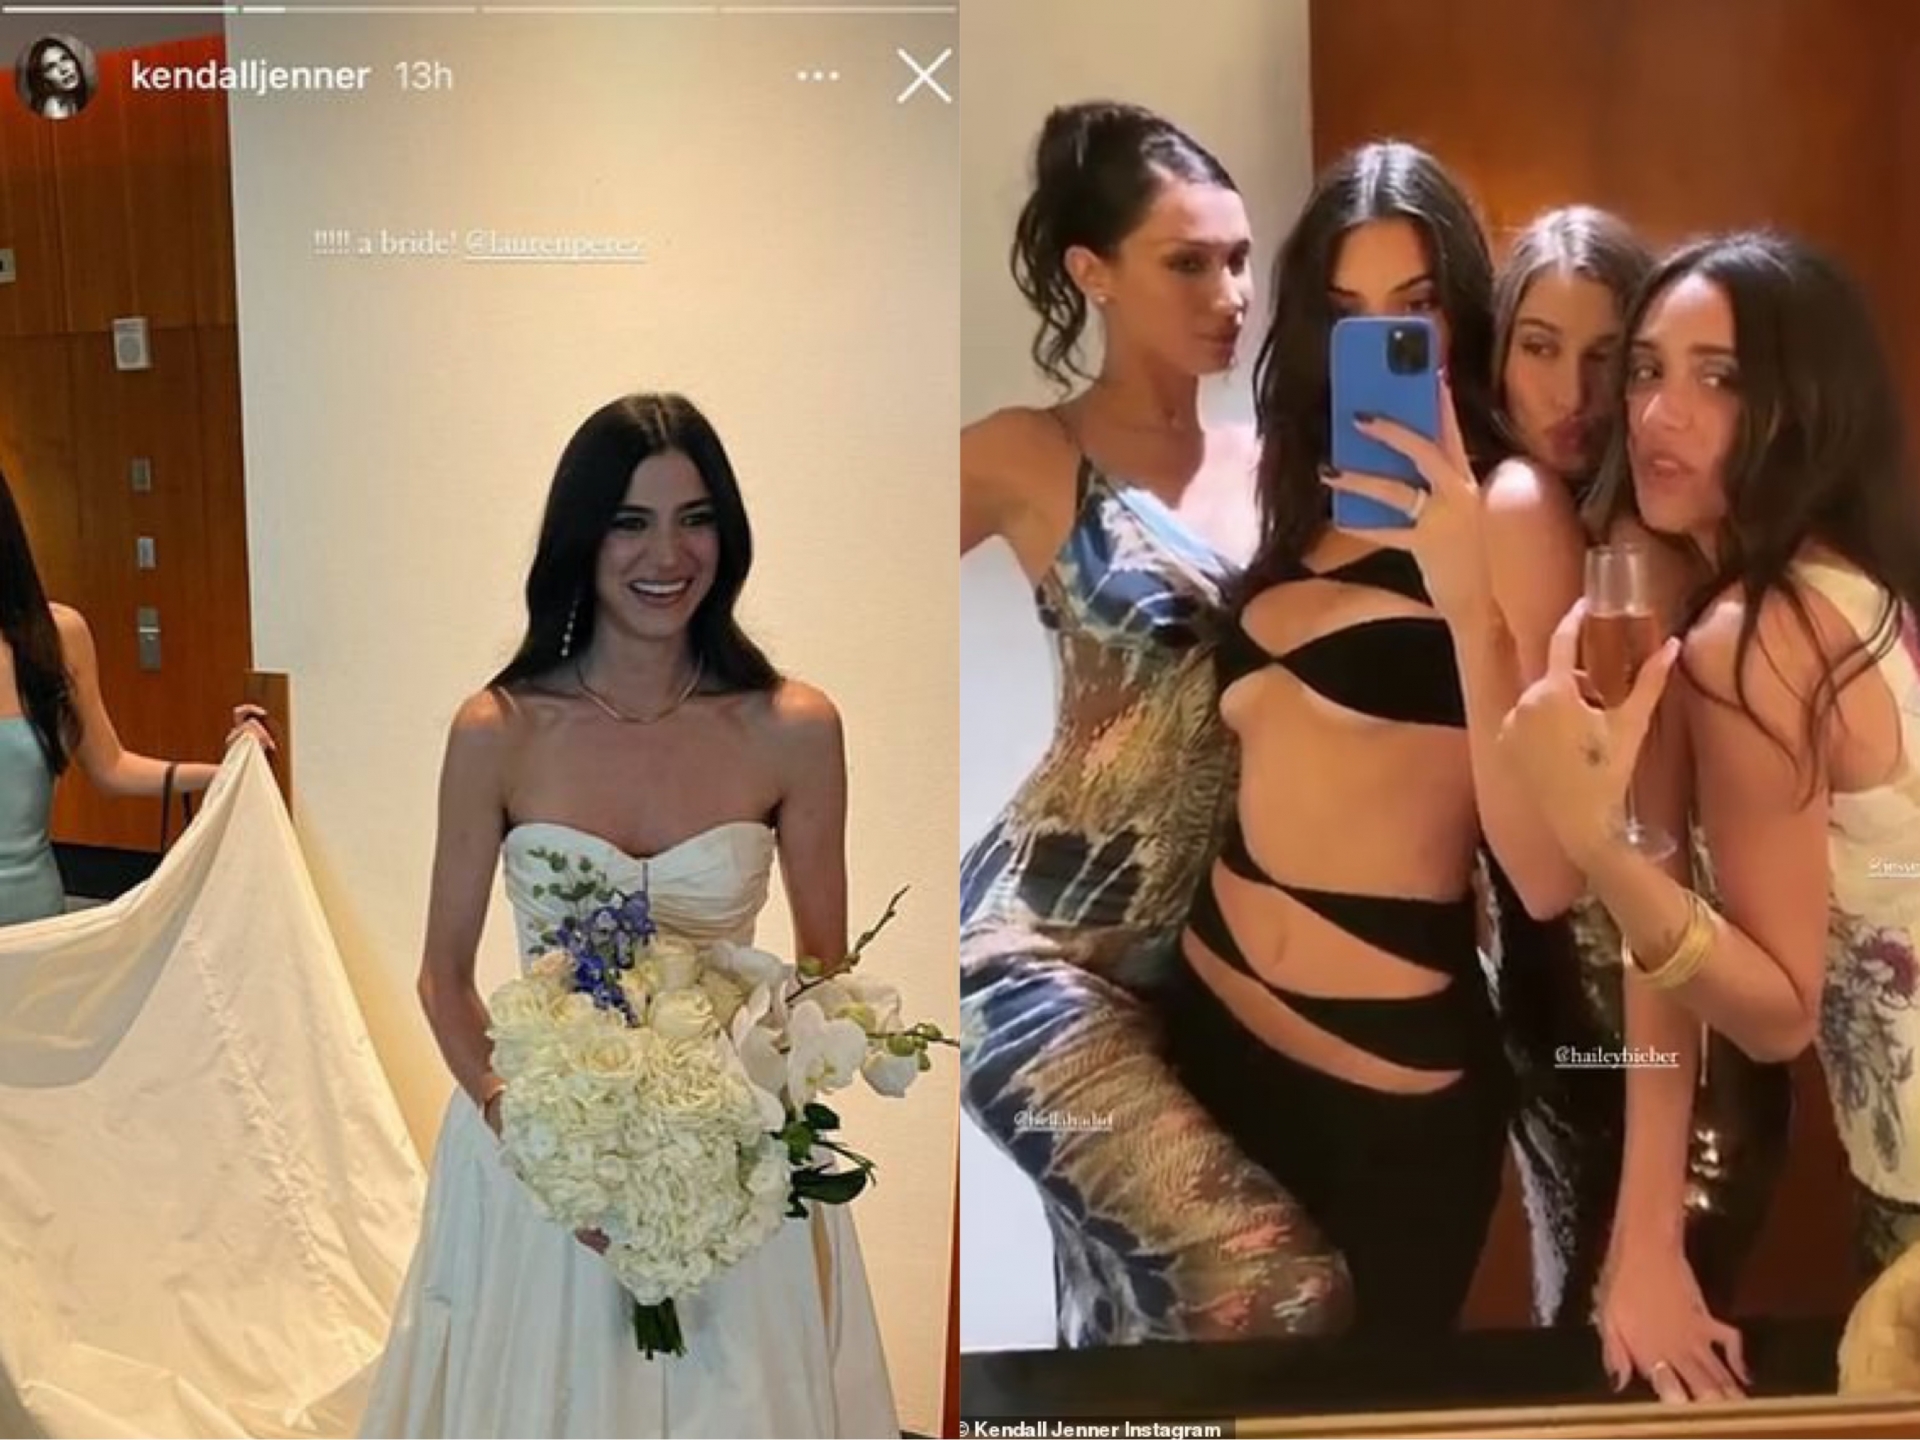 3 nàng IT girl đình đám đã có 1 màn đọ body cực 'gắt' tại đám cưới của bạn thân. Mặc dù đều diện trang phục ôm sát khoe body cực phẩm nhưng bộ váy của Kendall Jenner đã làm lu mờ tất cả.